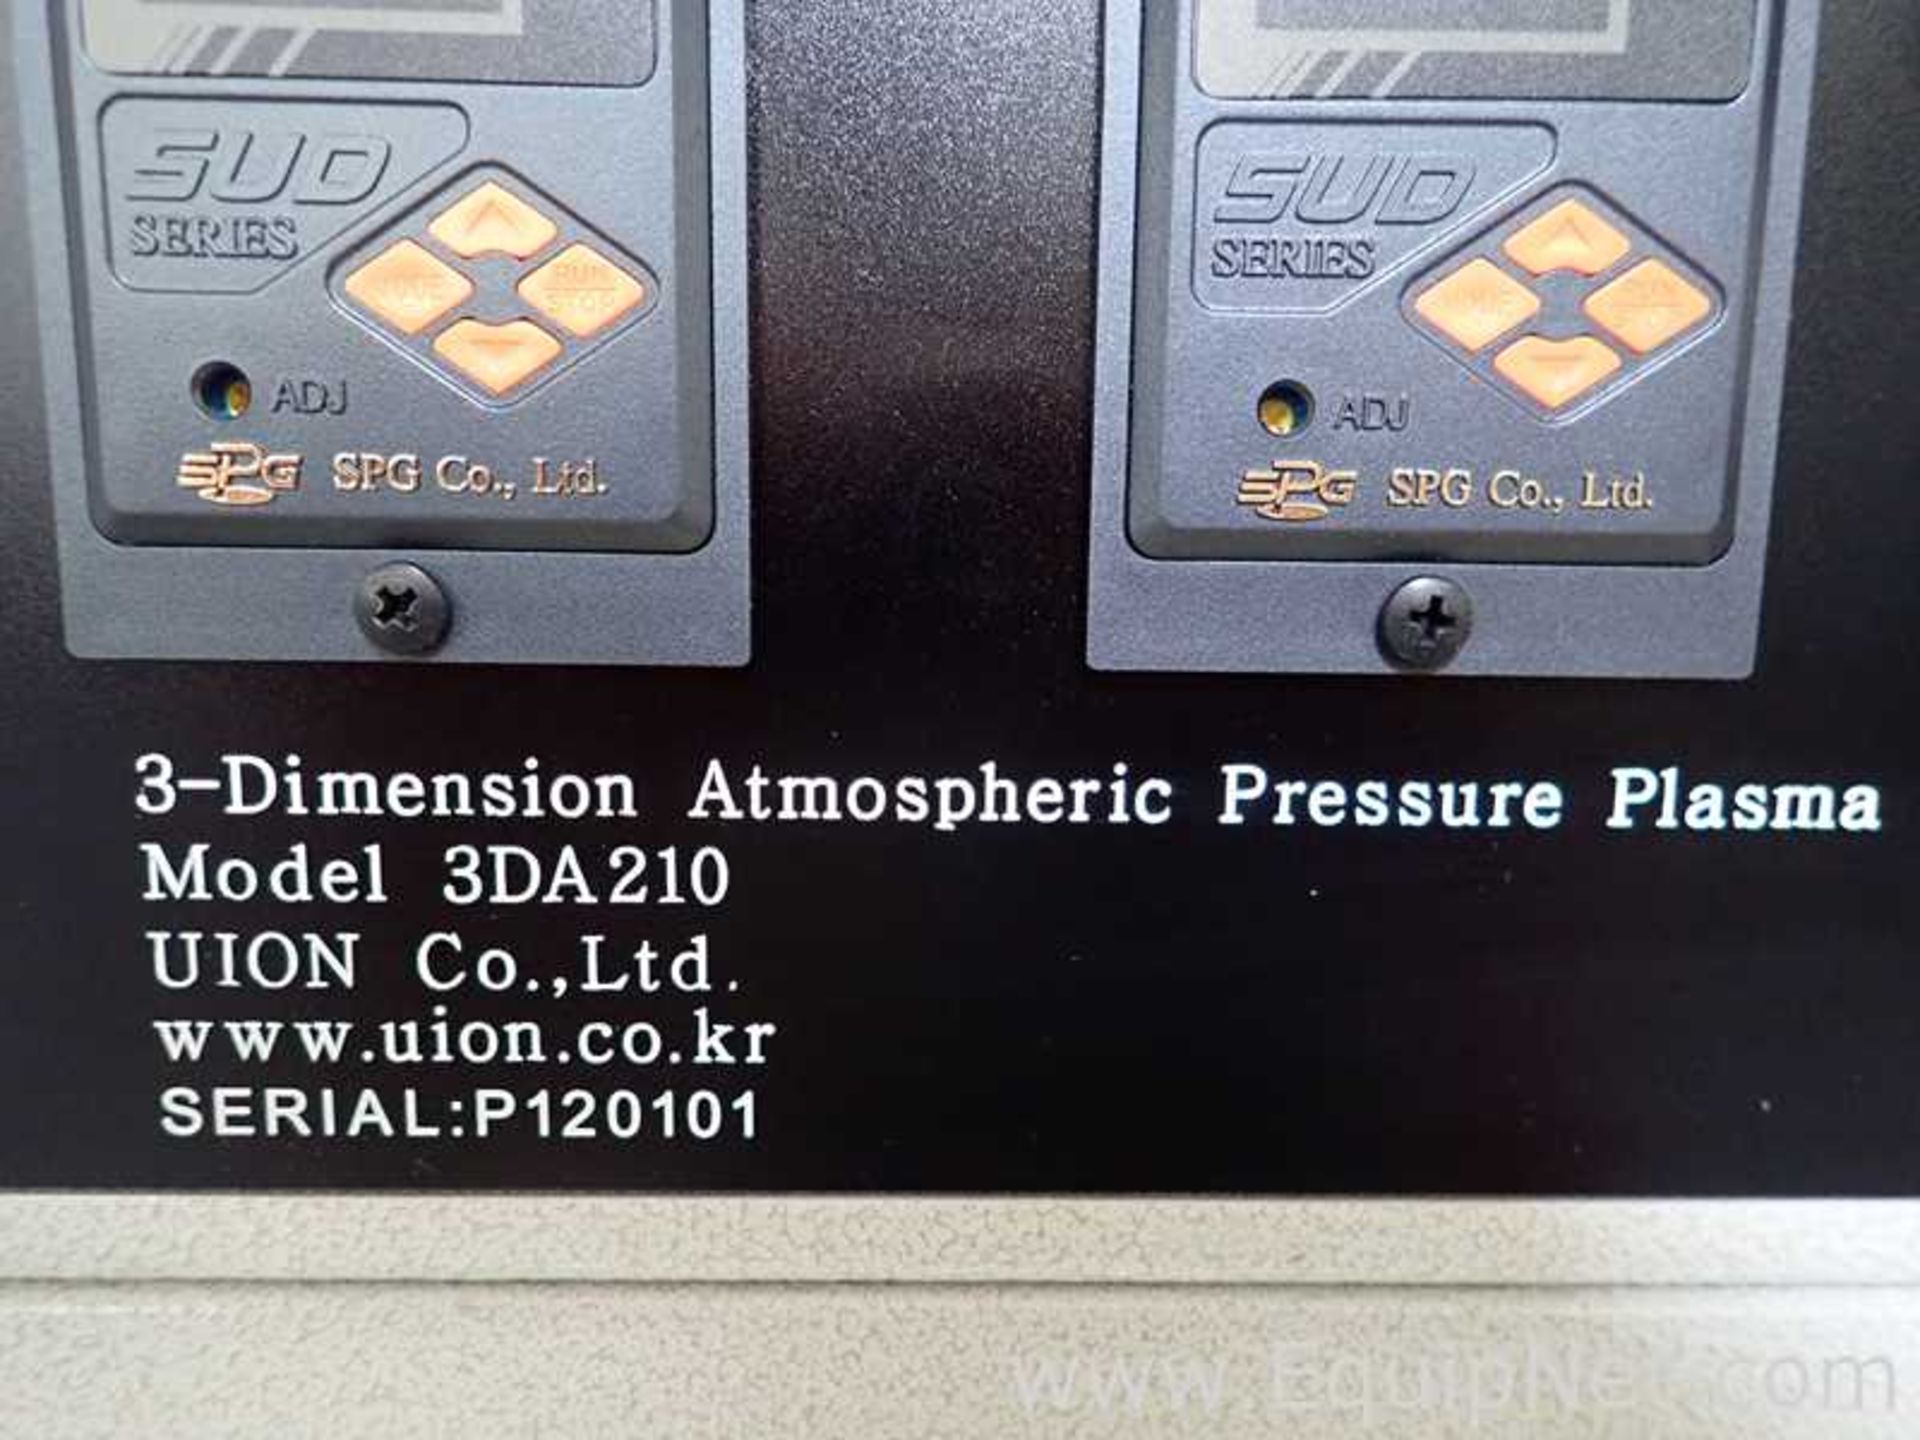 PSM Inc. 3DA210 Atmospheric Pressure Plasma Cleaner - Image 18 of 18